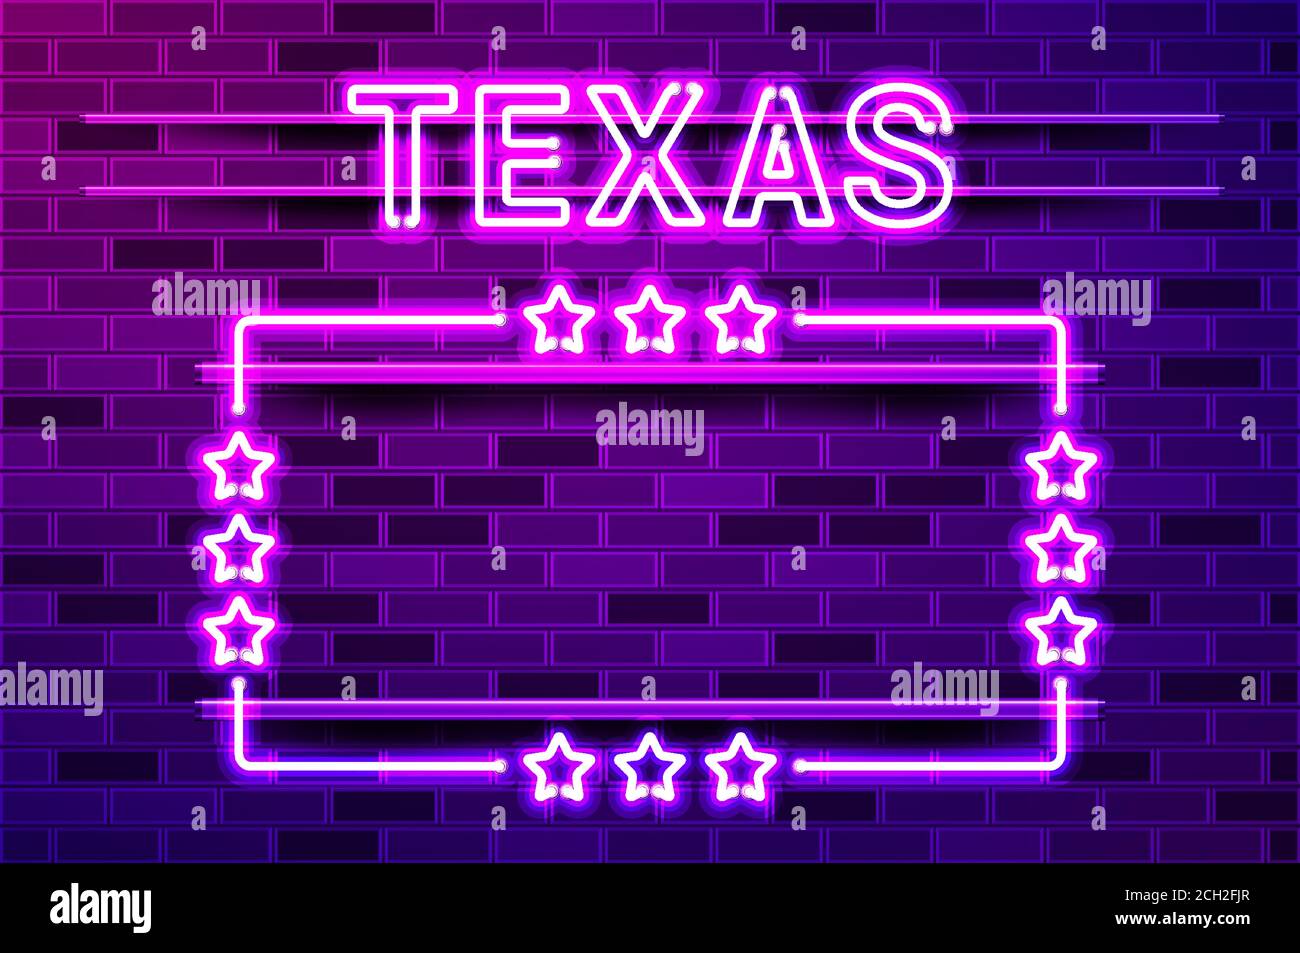 Texas US State lettrage au néon violet brillant et un cadre rectangulaire avec des étoiles. Illustration vectorielle réaliste. Mur de briques violets, violet phosphorescent, métal Illustration de Vecteur